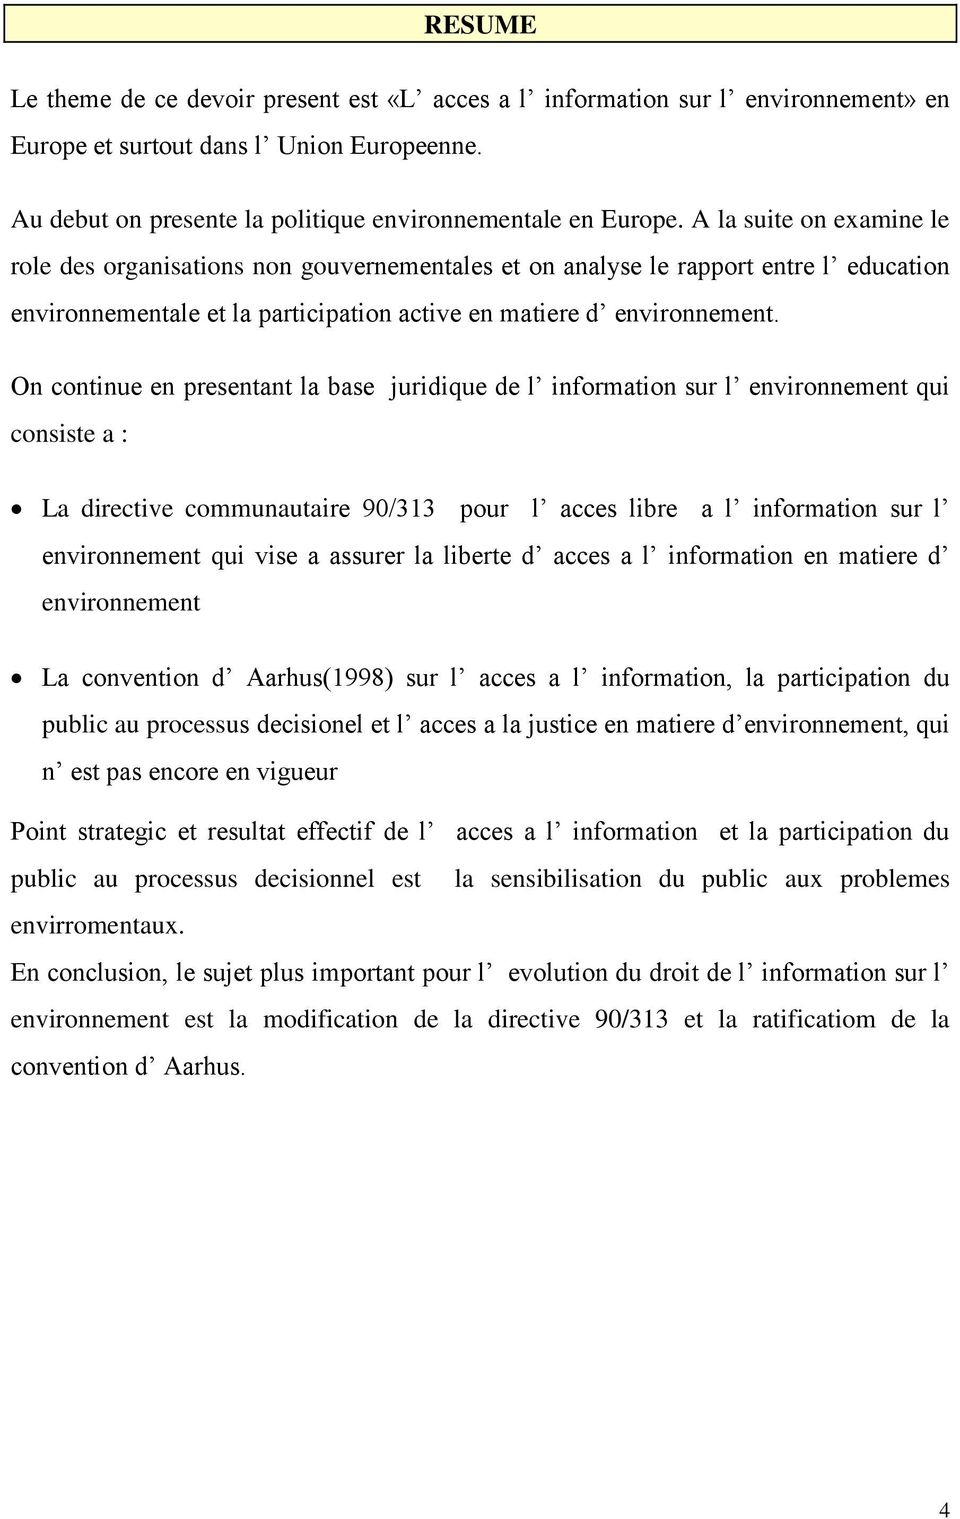 On continue en presentant la base juridique de l information sur l environnement qui consiste a : La directive communautaire 90/313 pour l acces libre a l information sur l environnement qui vise a